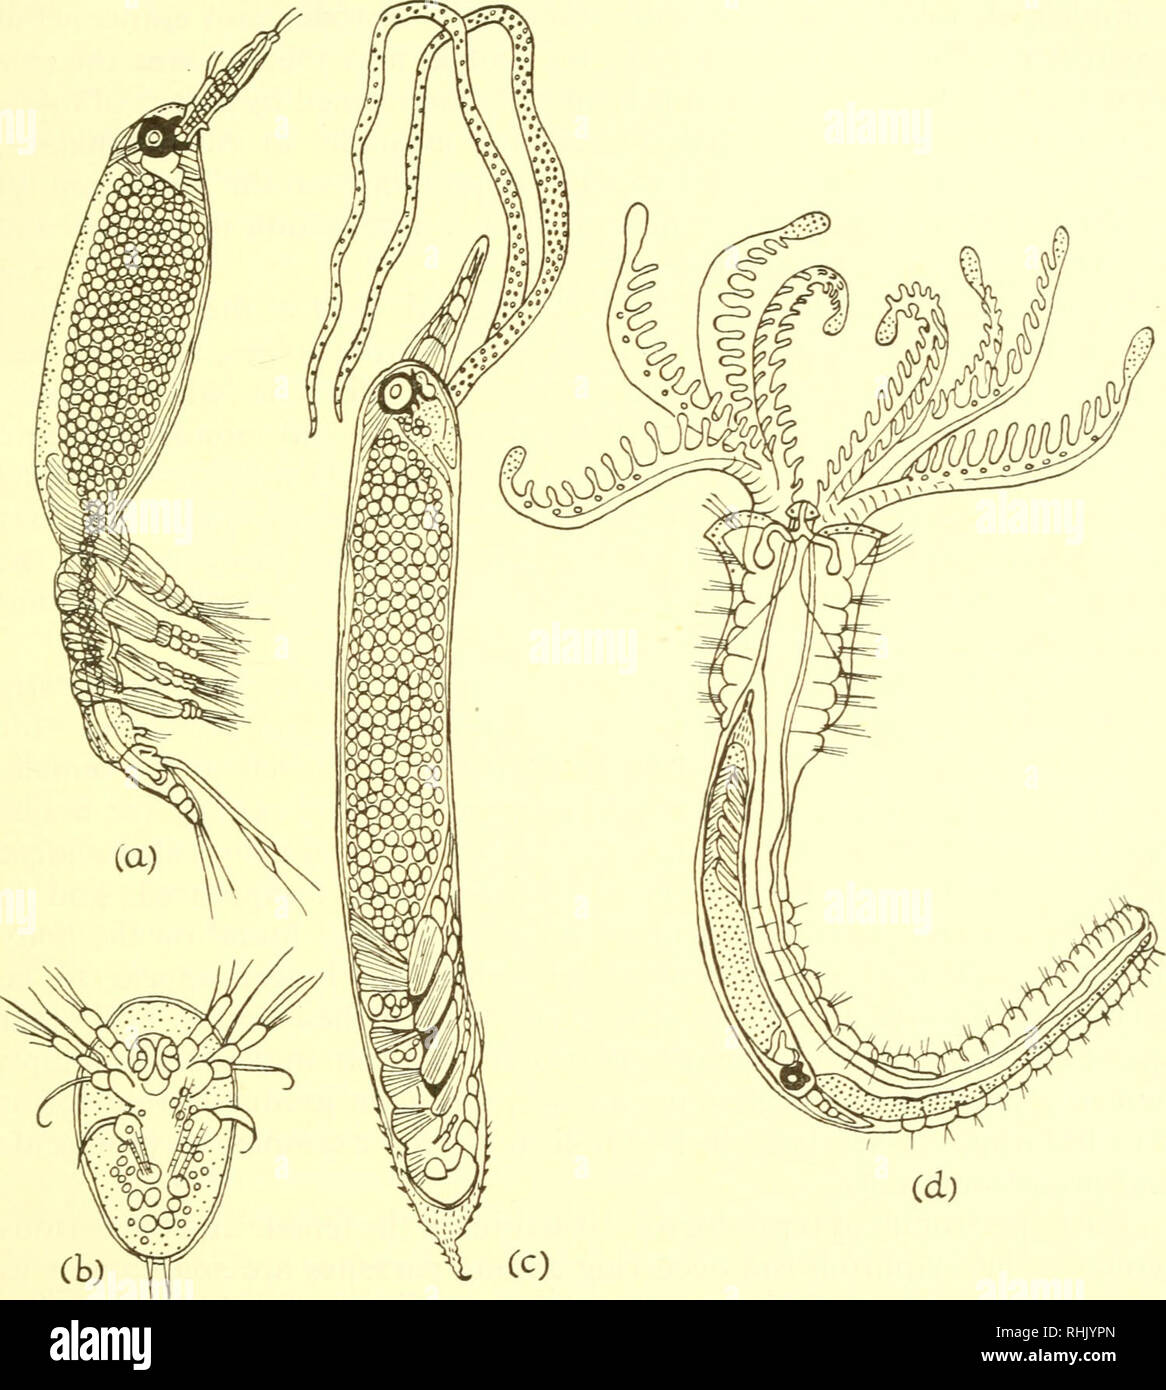 . La biologie des animaux marins. Les animaux marins ; physiologie, Comparative. Conclusions 607 associations probablement l'aspect le plus frappant du parasitisme est la tendance à la dégénérescence morphologique. Dans un début de parasitisme, comme vu dans le copépode Caligus, le parasite ne diffère que légèrement de formes indépendantes.. Fig. 14.17. Stades de développement dans l'espèce Monstrillid Cymbasoma rigidum ( = Haemocera danae) (a) adultes pélagiques ; (b) larve nauplius ; (c) femelle parasite retiré de son hôte ; (d) parasite en position dans son hôte (Salmacina dysteri). (D'après un dessin de Malaquin (65).) C'est certains Banque D'Images